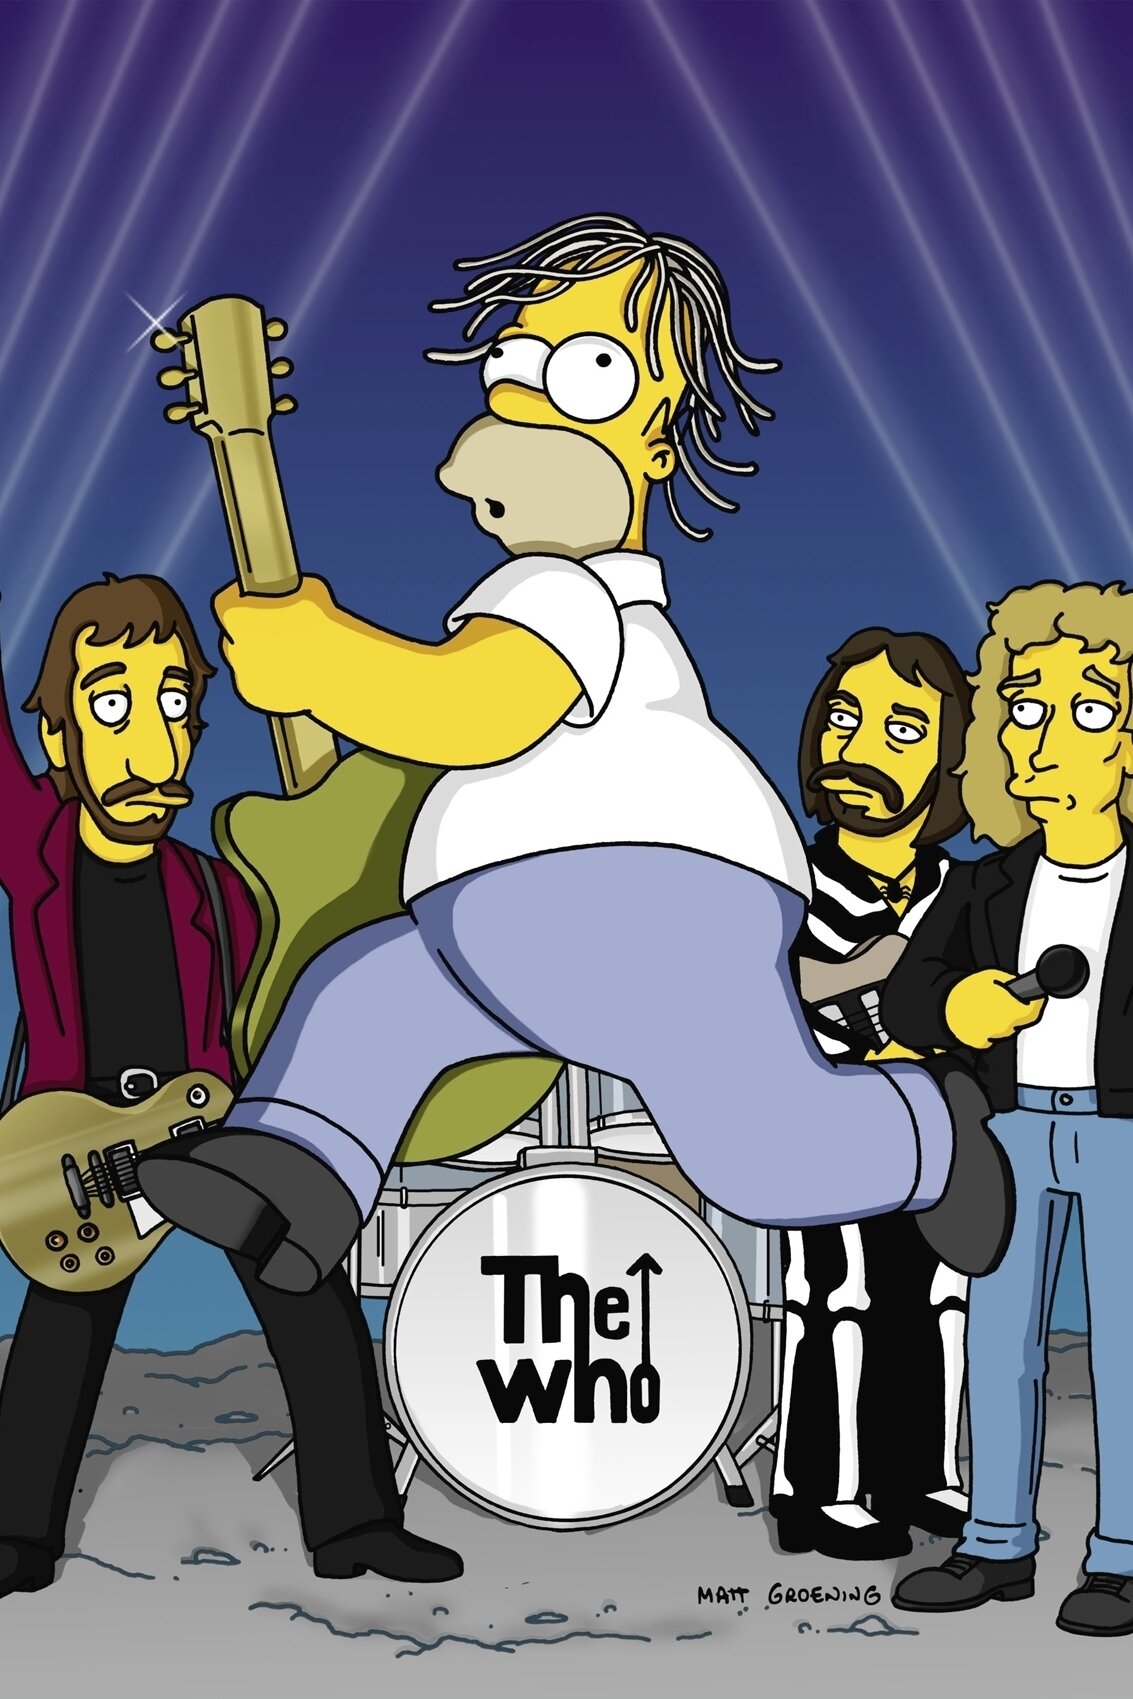 Les Simpson - La bataille des deux Springfield